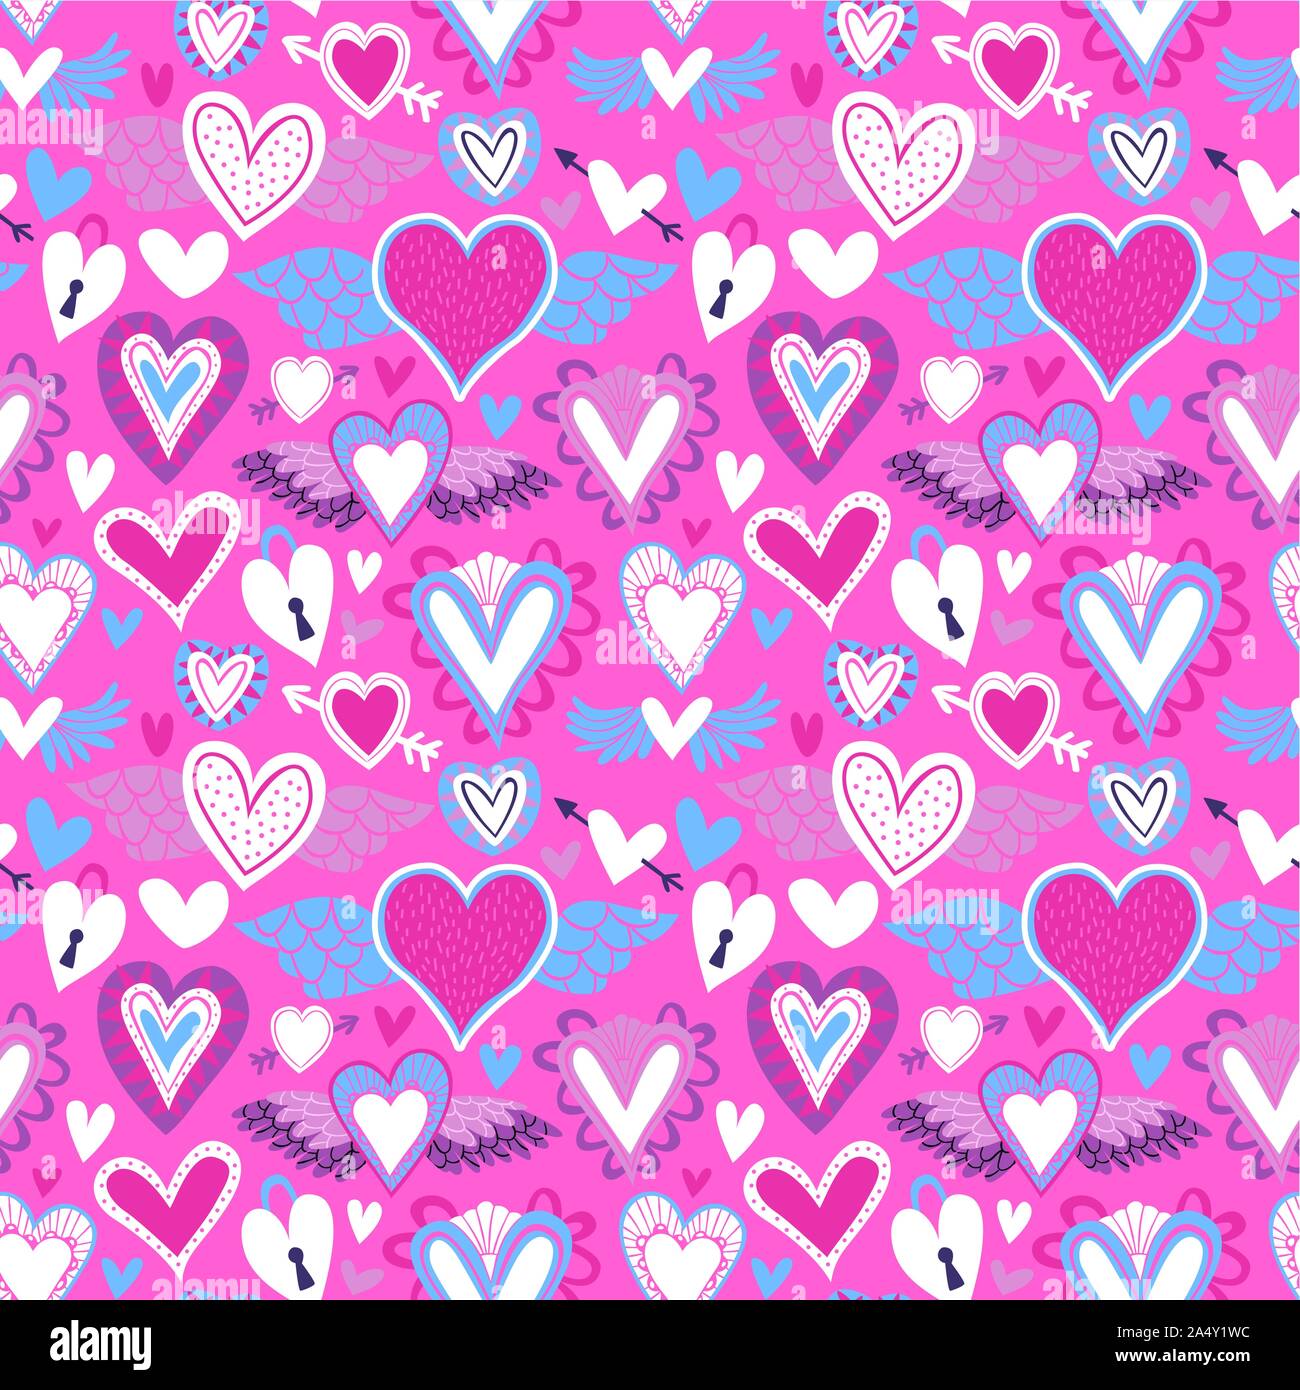 Herzform nahtlose Muster, Rosa cupid Herzen im Cartoon Stil für Valentines Tag Urlaub oder ein romantisches Ereignis. Stock Vektor